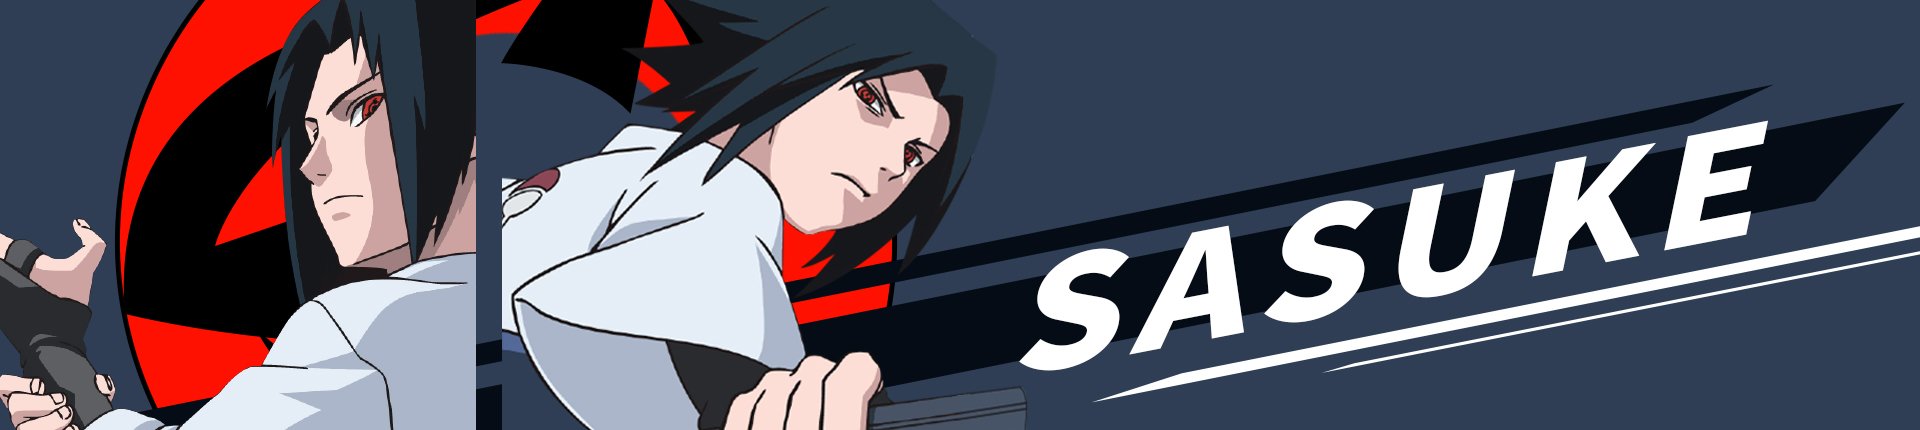 Cosplay - Serie Sasuke Sharingan